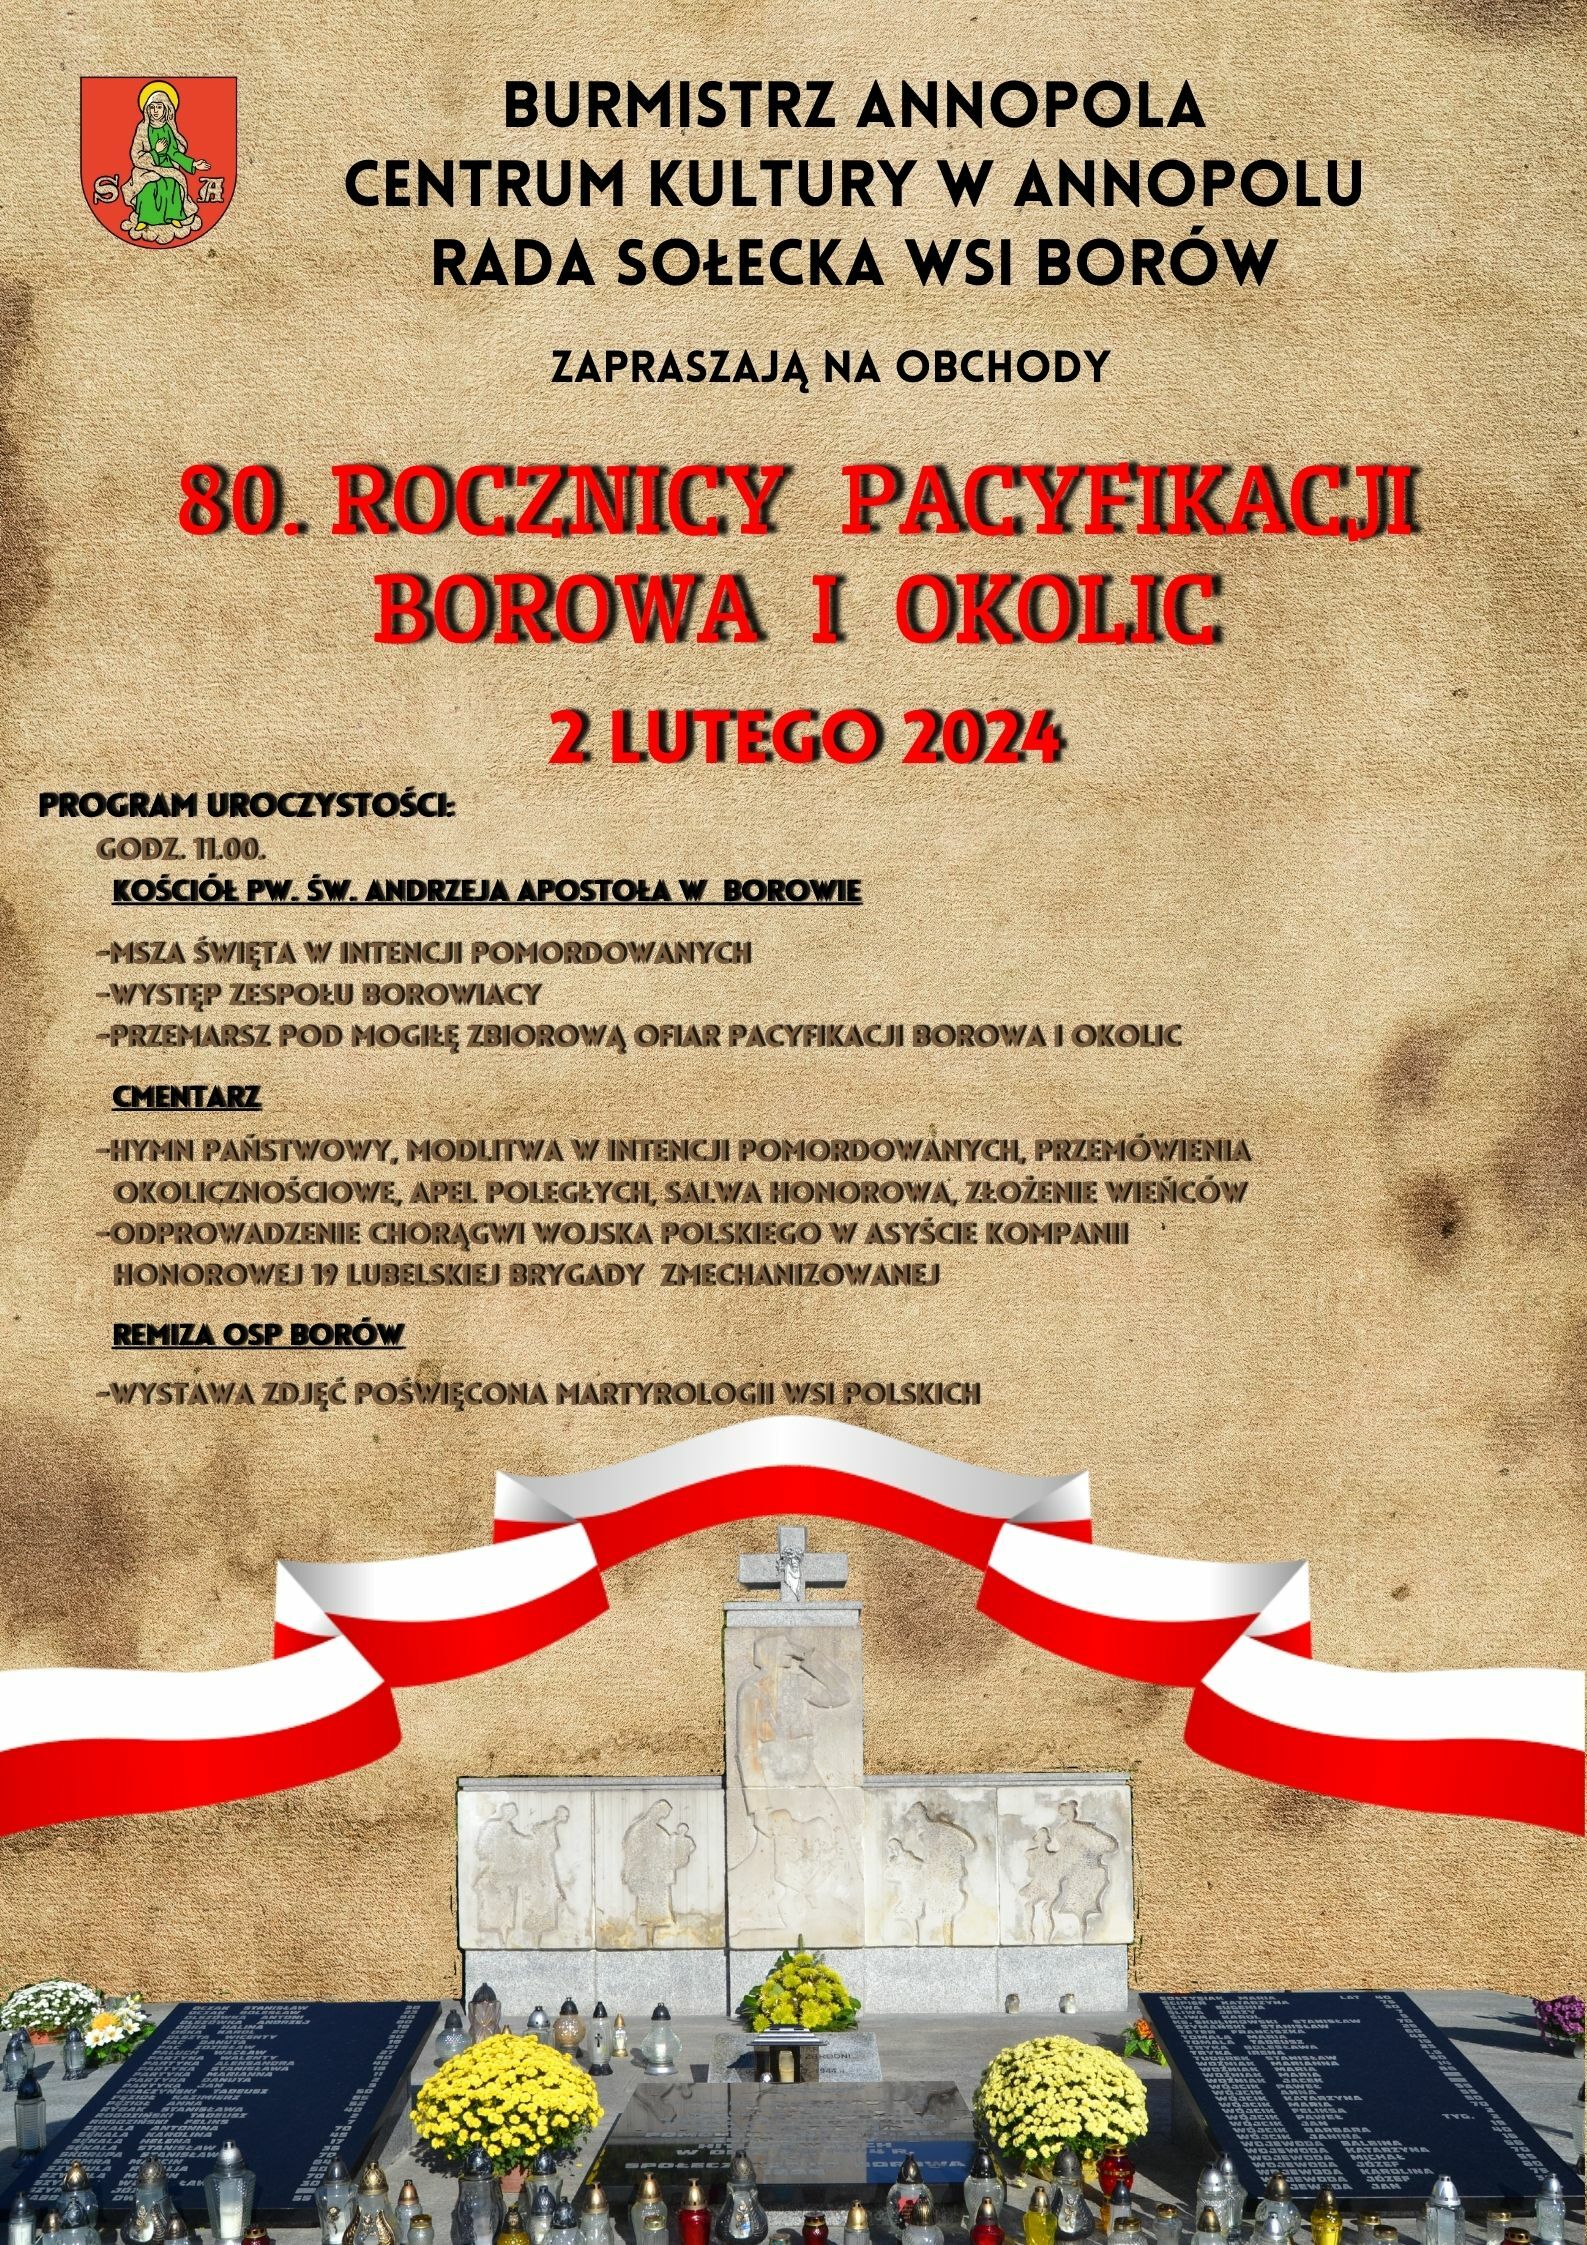 Plakat informacyjny o 80. rocznicy pacifikacji wsi Solec, wydarzeniu historycznym, z czerwonymi i białymi elementami, datami i szczegółami dotyczącymi obchodów.